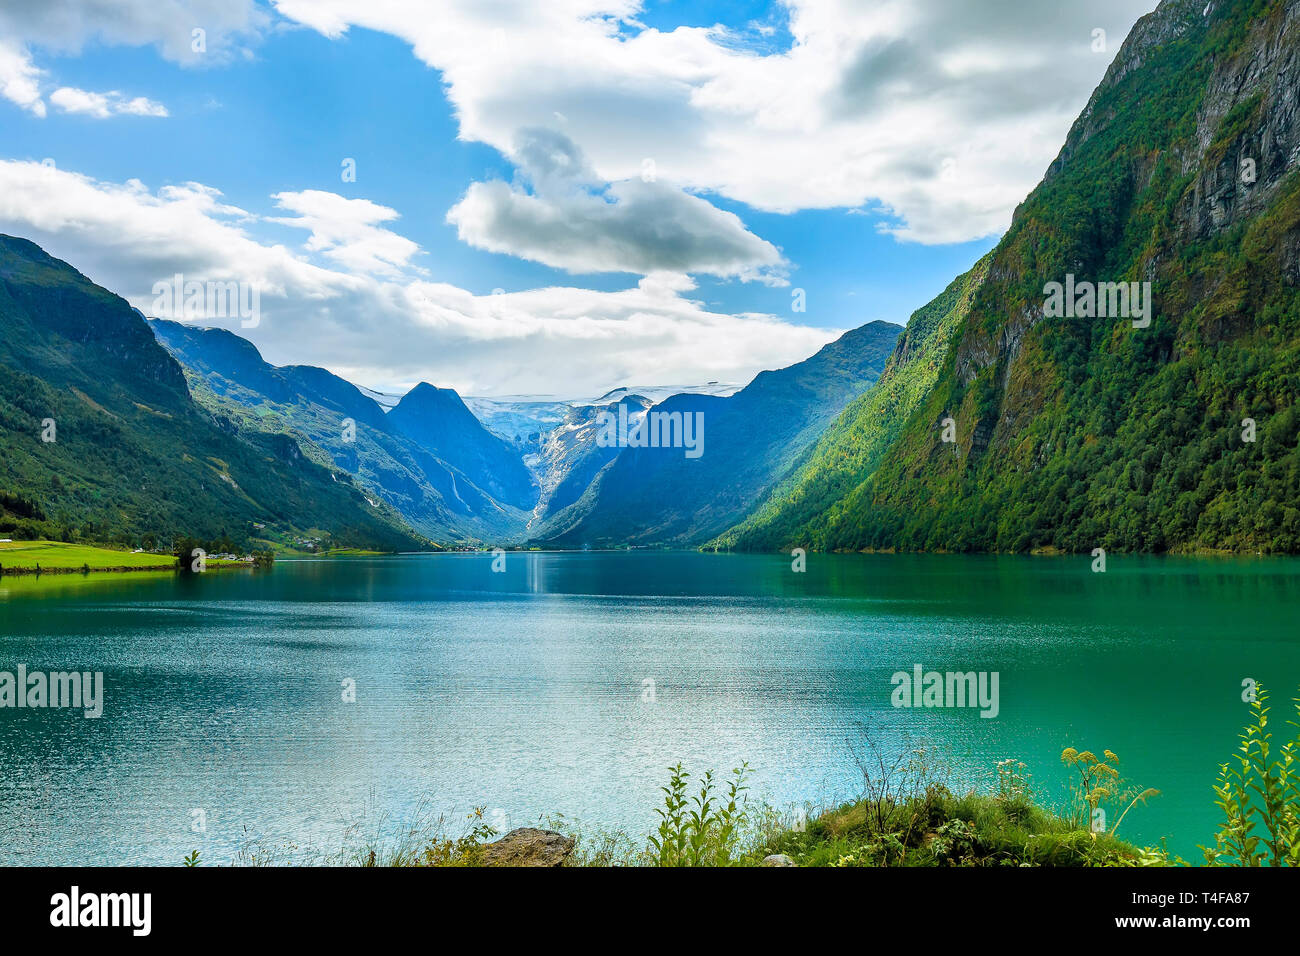 Paysage avec Fjord fjord norvégien, montagnes, fleurs et des glaciers dans la région de Olden, Norvège Banque D'Images